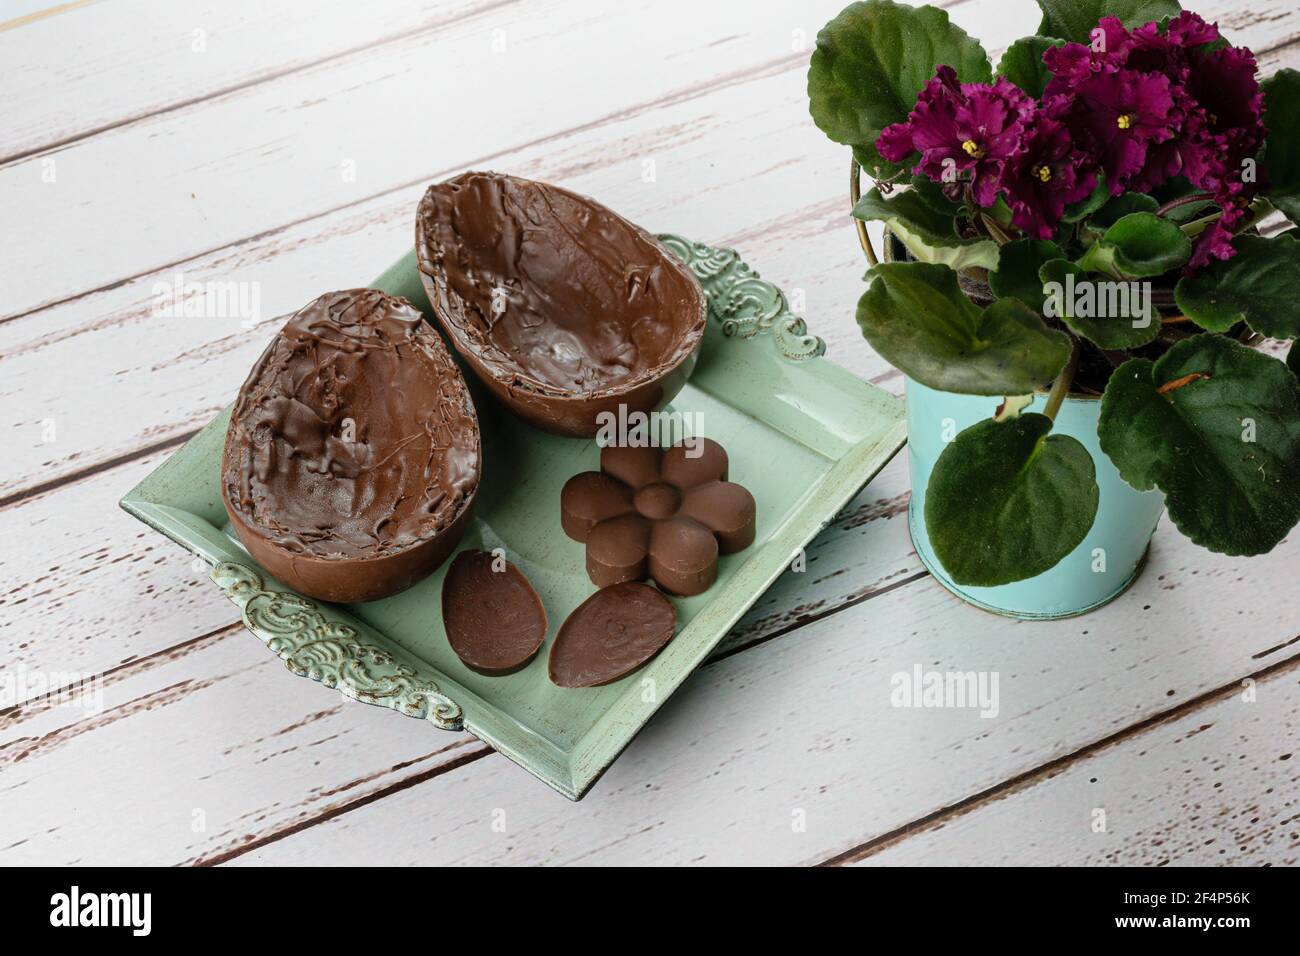 Dos mitades de chocolate huevo de Pascua, en una pequeña bandeja antigua junto a mini chocolates y flores. Foto de stock